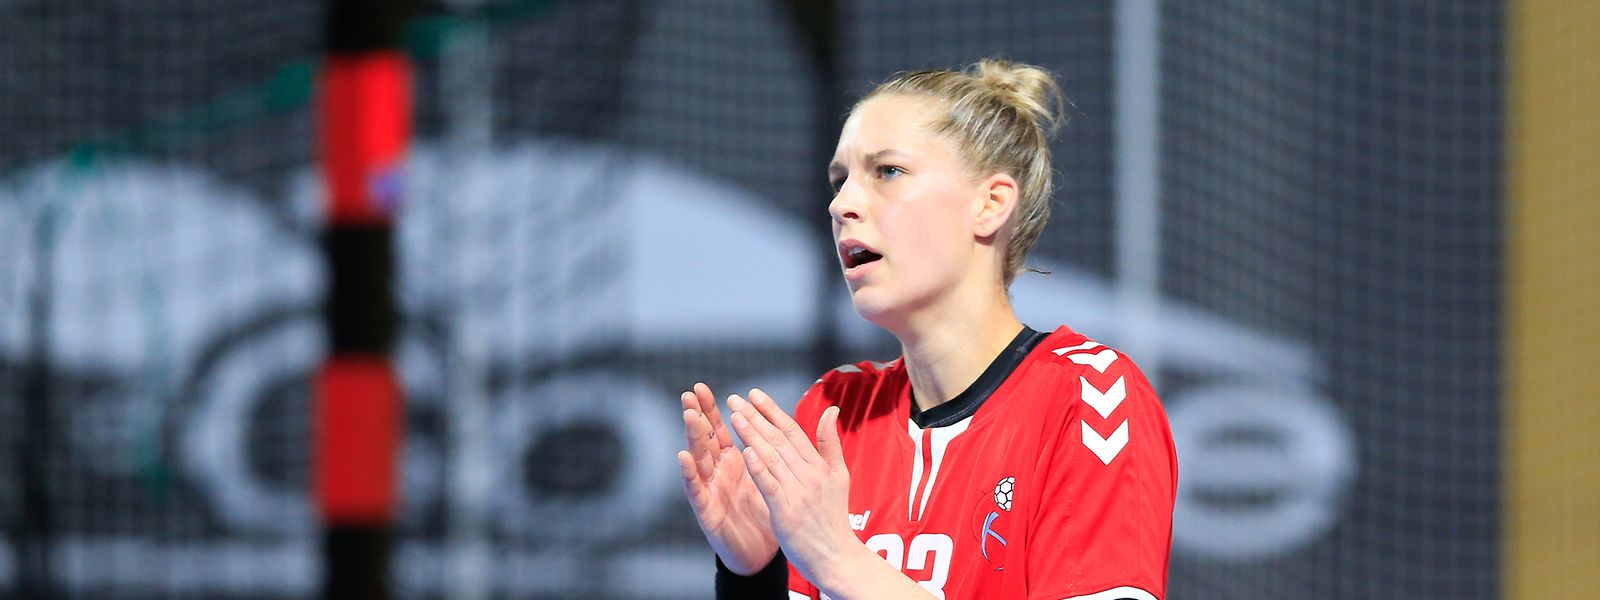 Tina Welter ist stolz auf die Leistung der Handball-Nationalmannschaft.